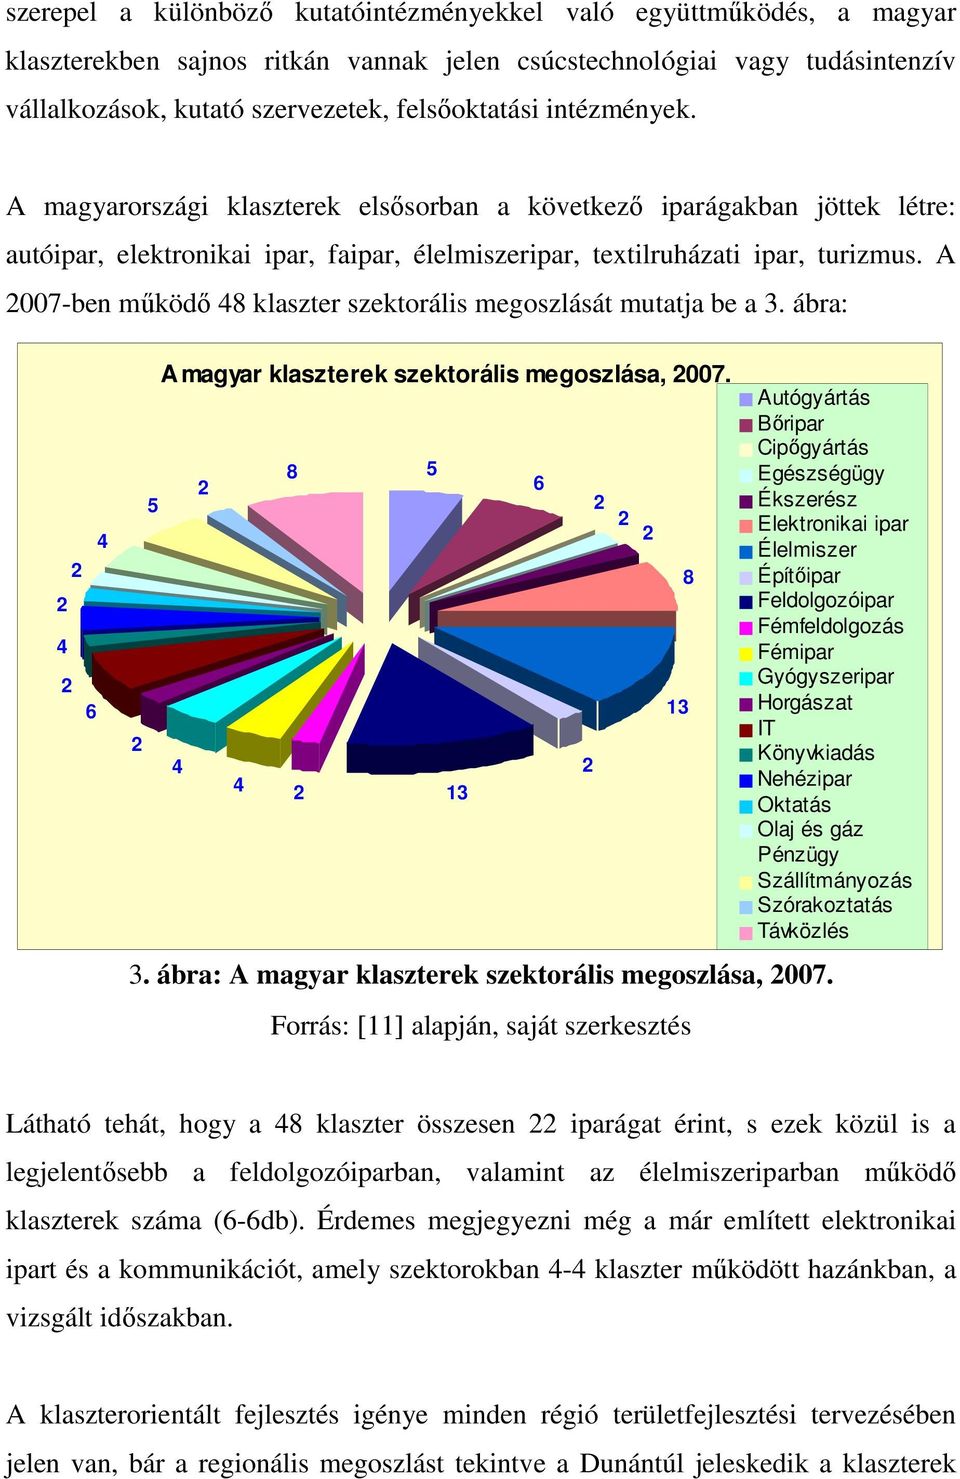 A 2007-ben mőködı 48 klaszter szektorális megoszlását mutatja be a 3. ábra: 4 2 2 4 2 6 2 5 A magyar klaszterek szektorális megoszlása, 2007. 4 2 4 8 2 5 13 6 2 2 2 2 3.